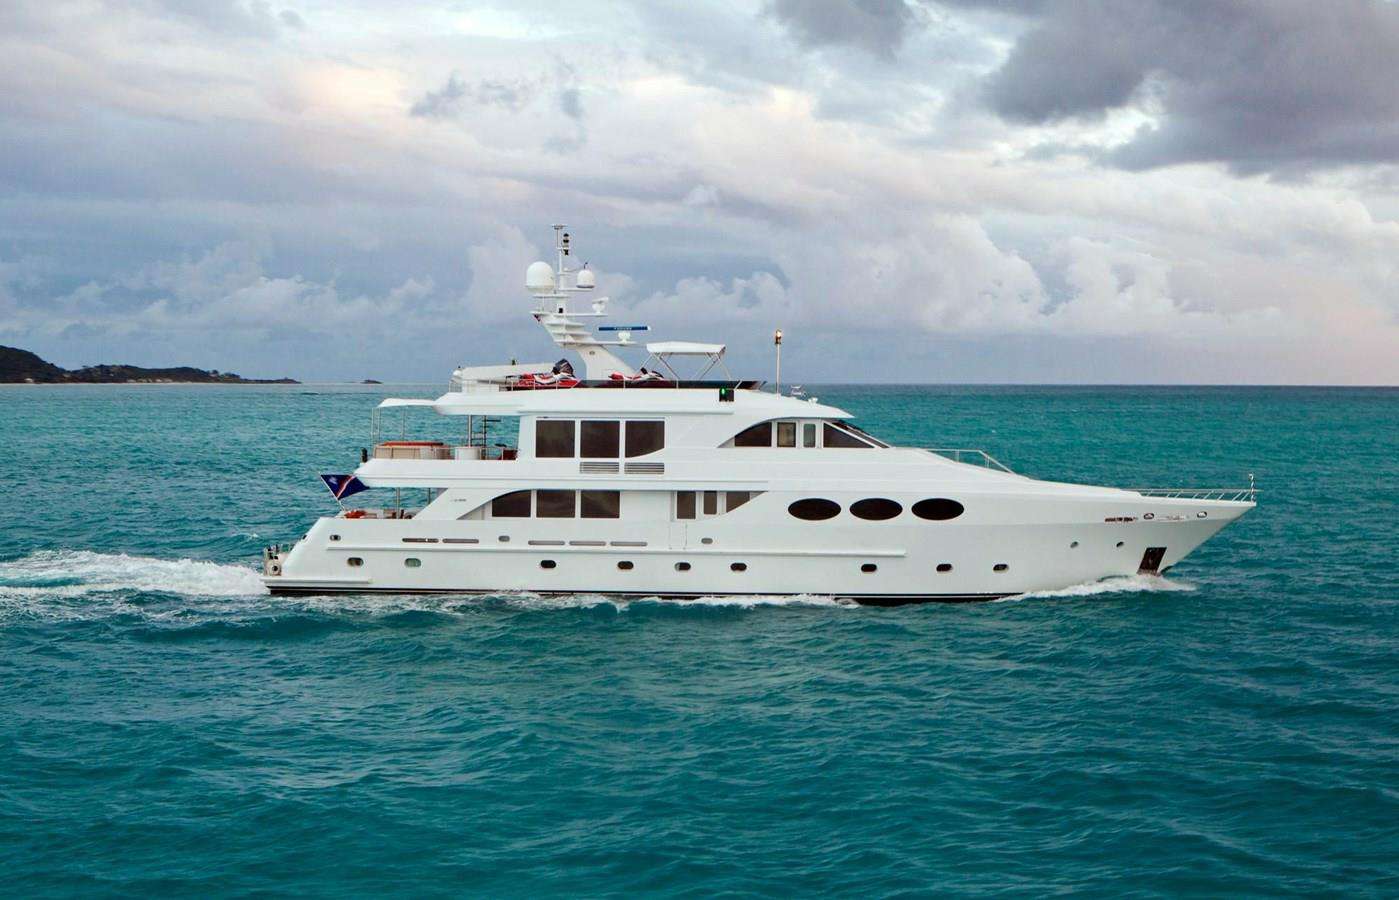 LAST CALL - Yacht Charter Nanaimo & Boat hire in Alaska, Bahamas, Mexico 1